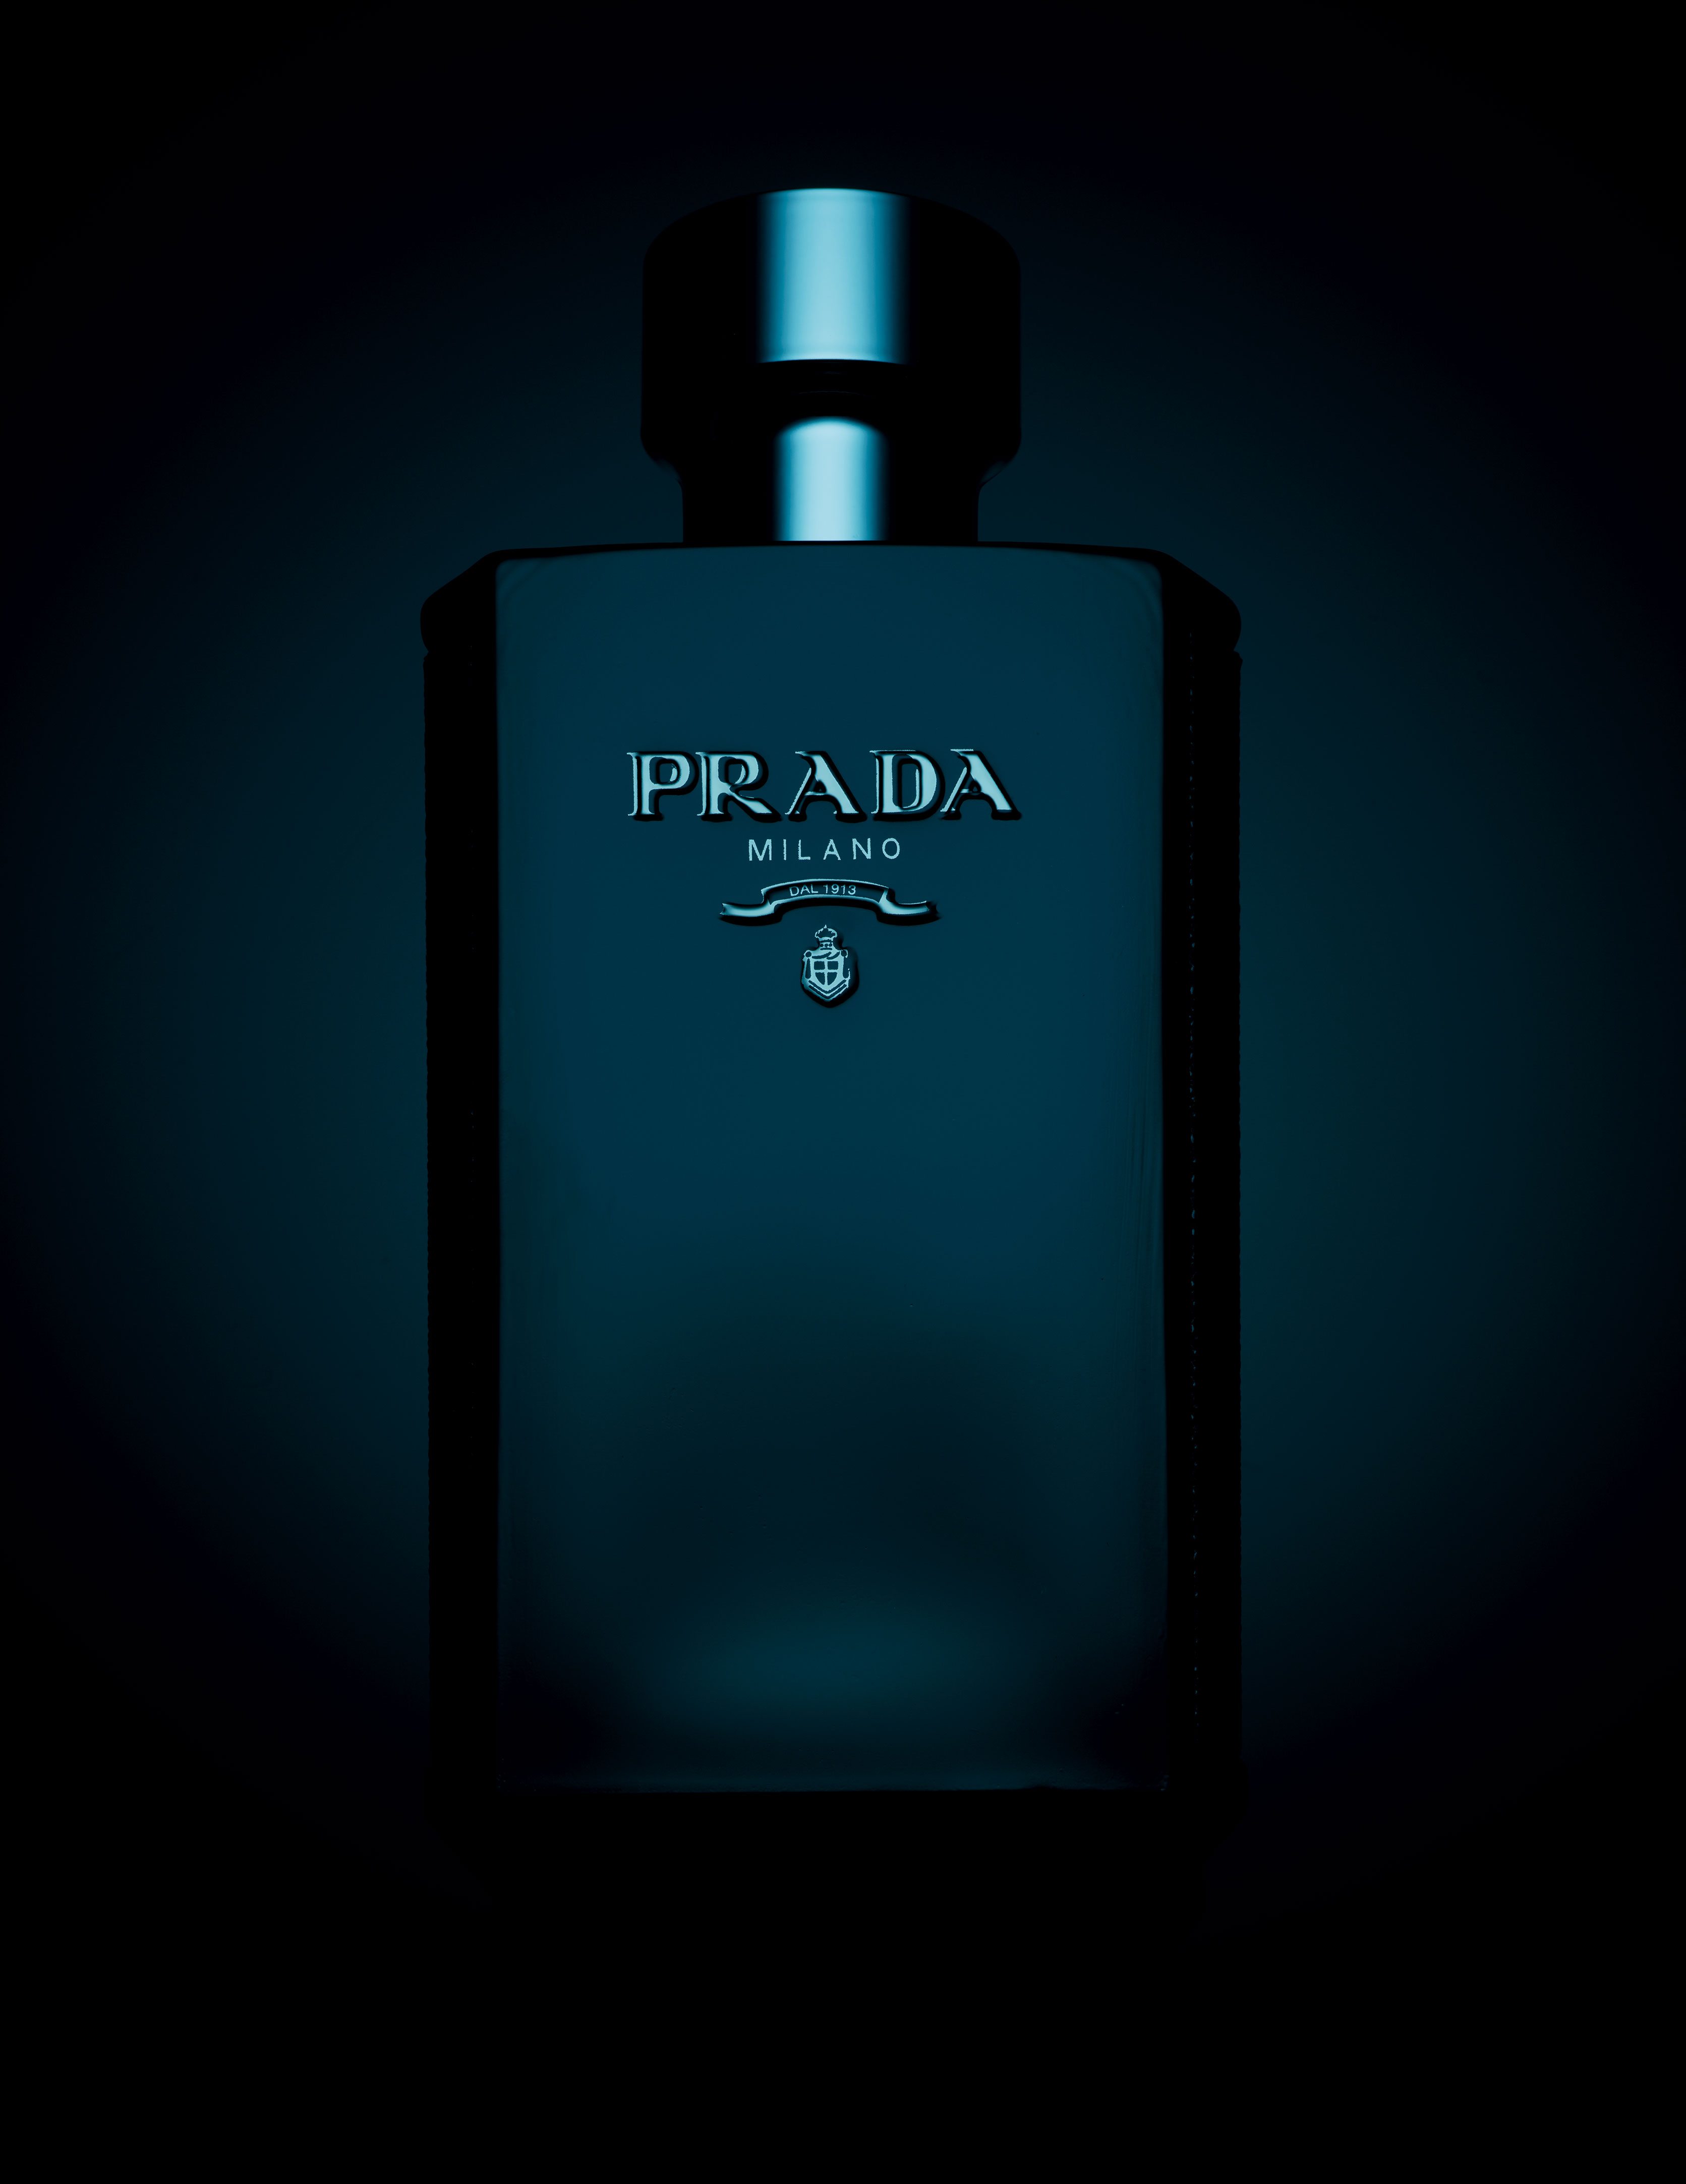 “Tapage nocturne interdit”, les parfums masculins dans l'objectif de Guido Mocafico